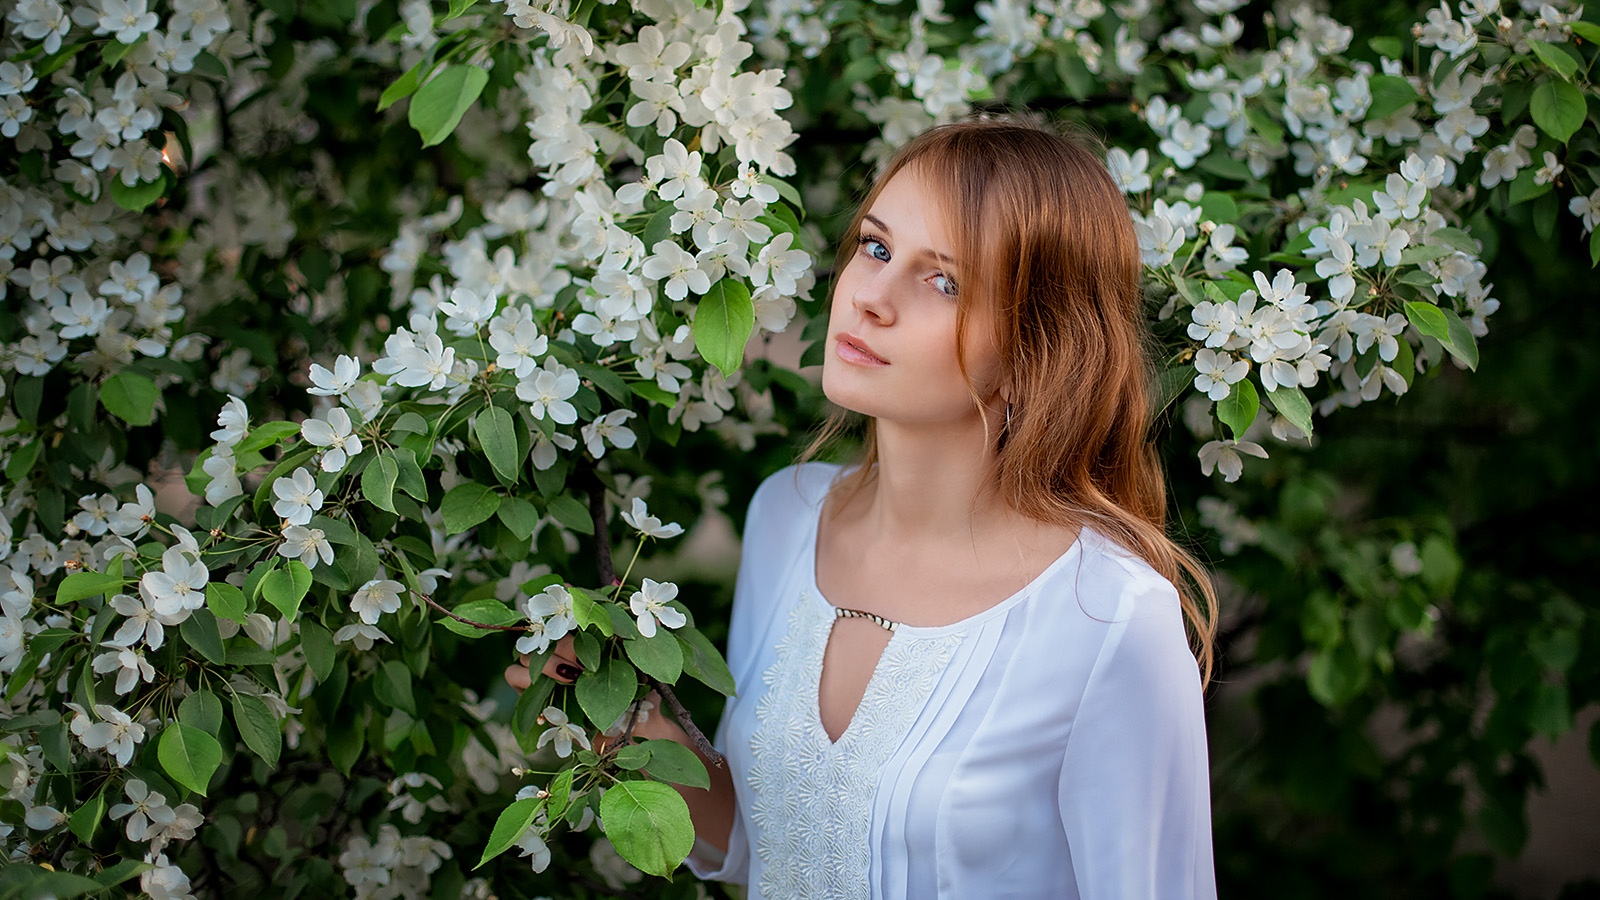 Katerina Romanyuk Dmitry Korneev Portrait Flowers Plants Women Women Outdoors Looking At Viewer Mode 1600x900